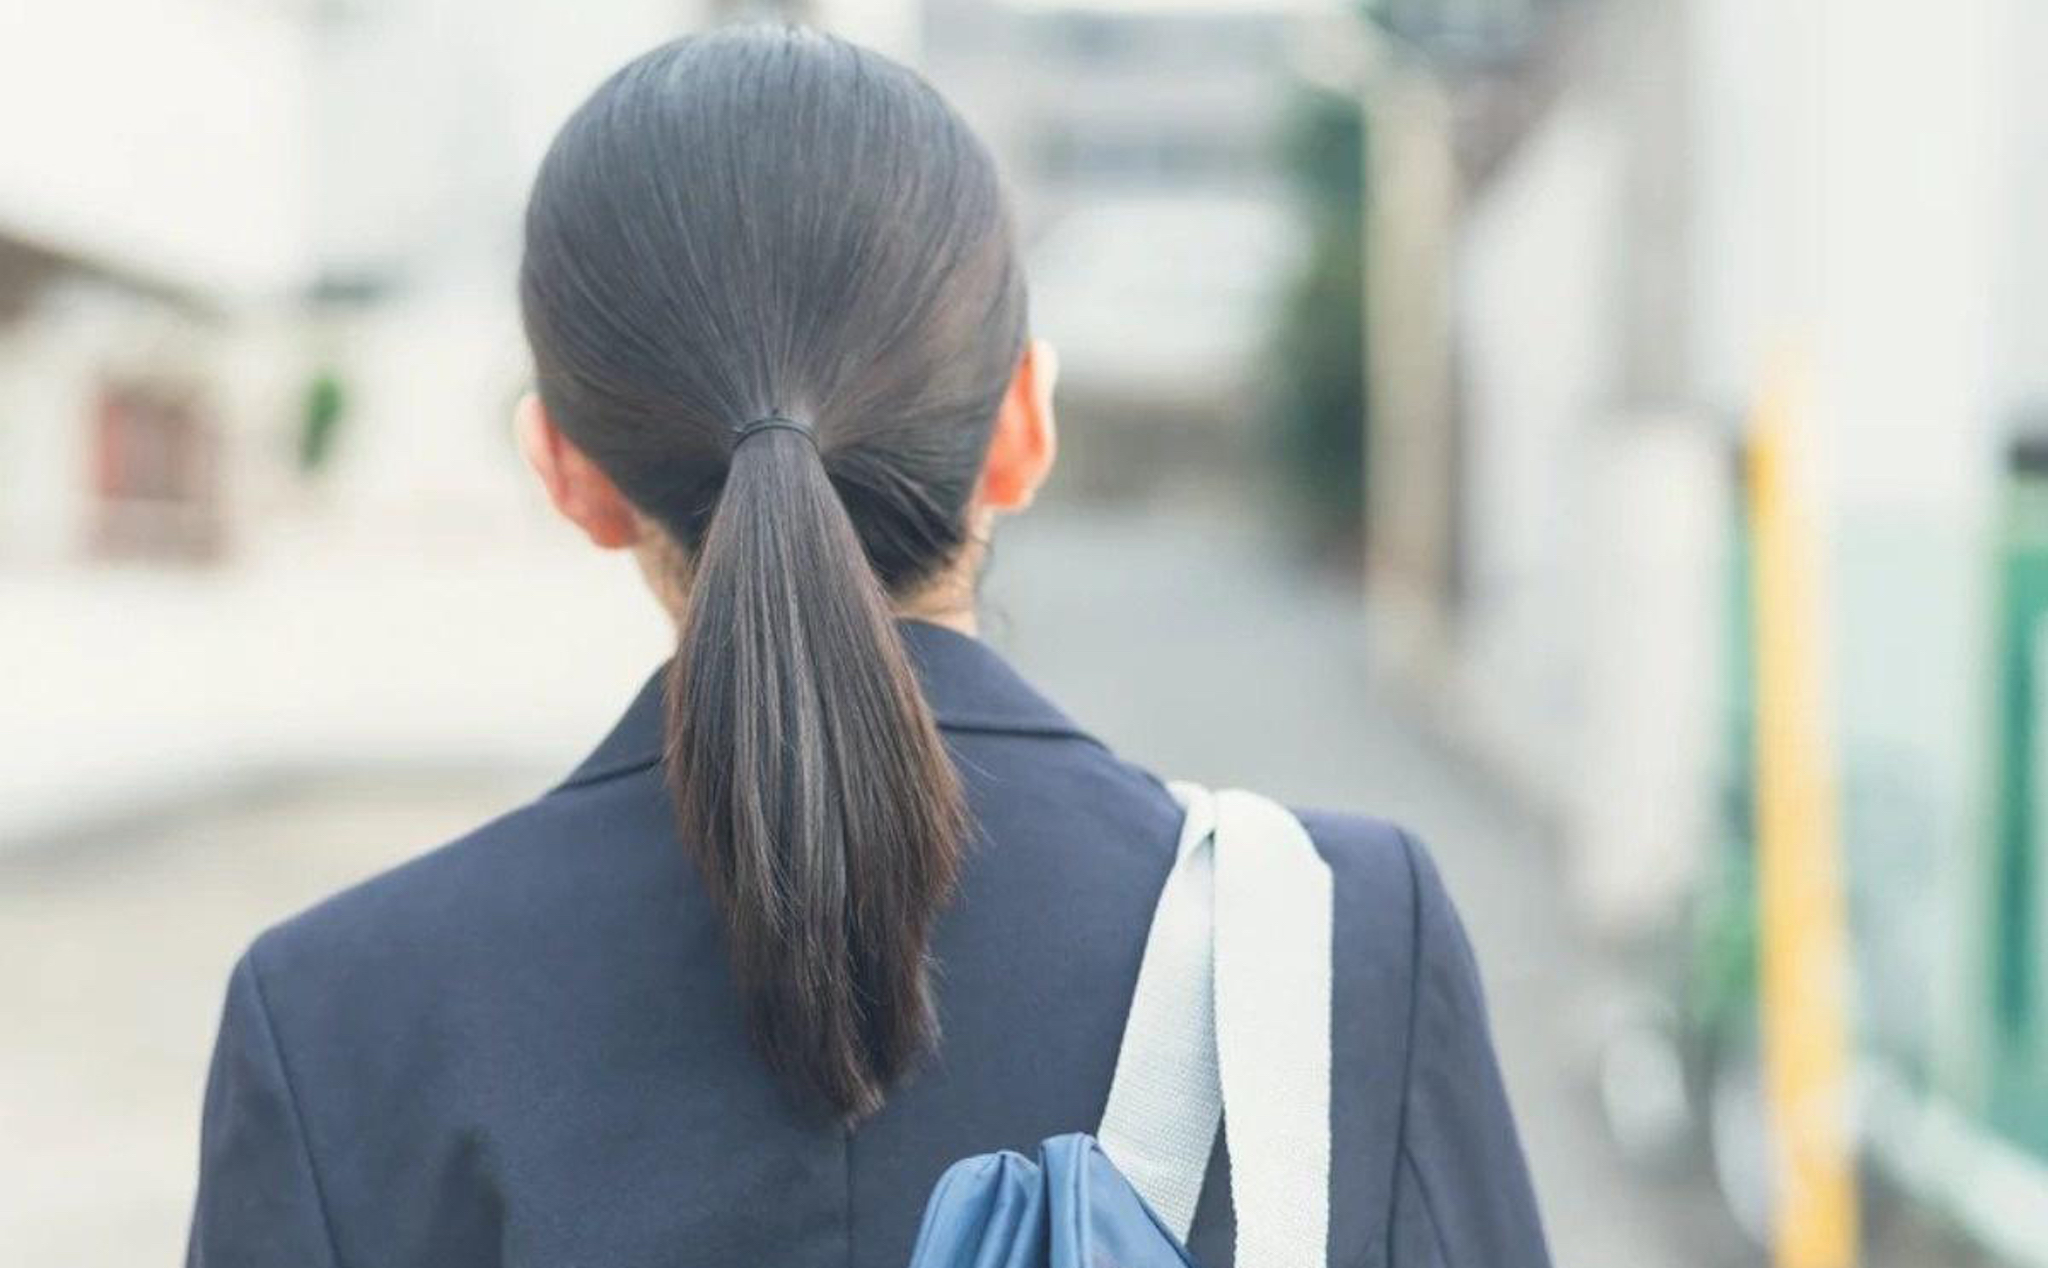 Trường học Nhật Bản nổi tiếng với quy định cấm buộc tóc đuôi ngựa, nhưng điều đó không hề giảm đi nét đẹp và tinh tế của các học sinh. Hình ảnh này sẽ giới thiệu đến bạn một phong cách trang phục và tóc tuyệt vời của các bạn trẻ Nhật Bản.